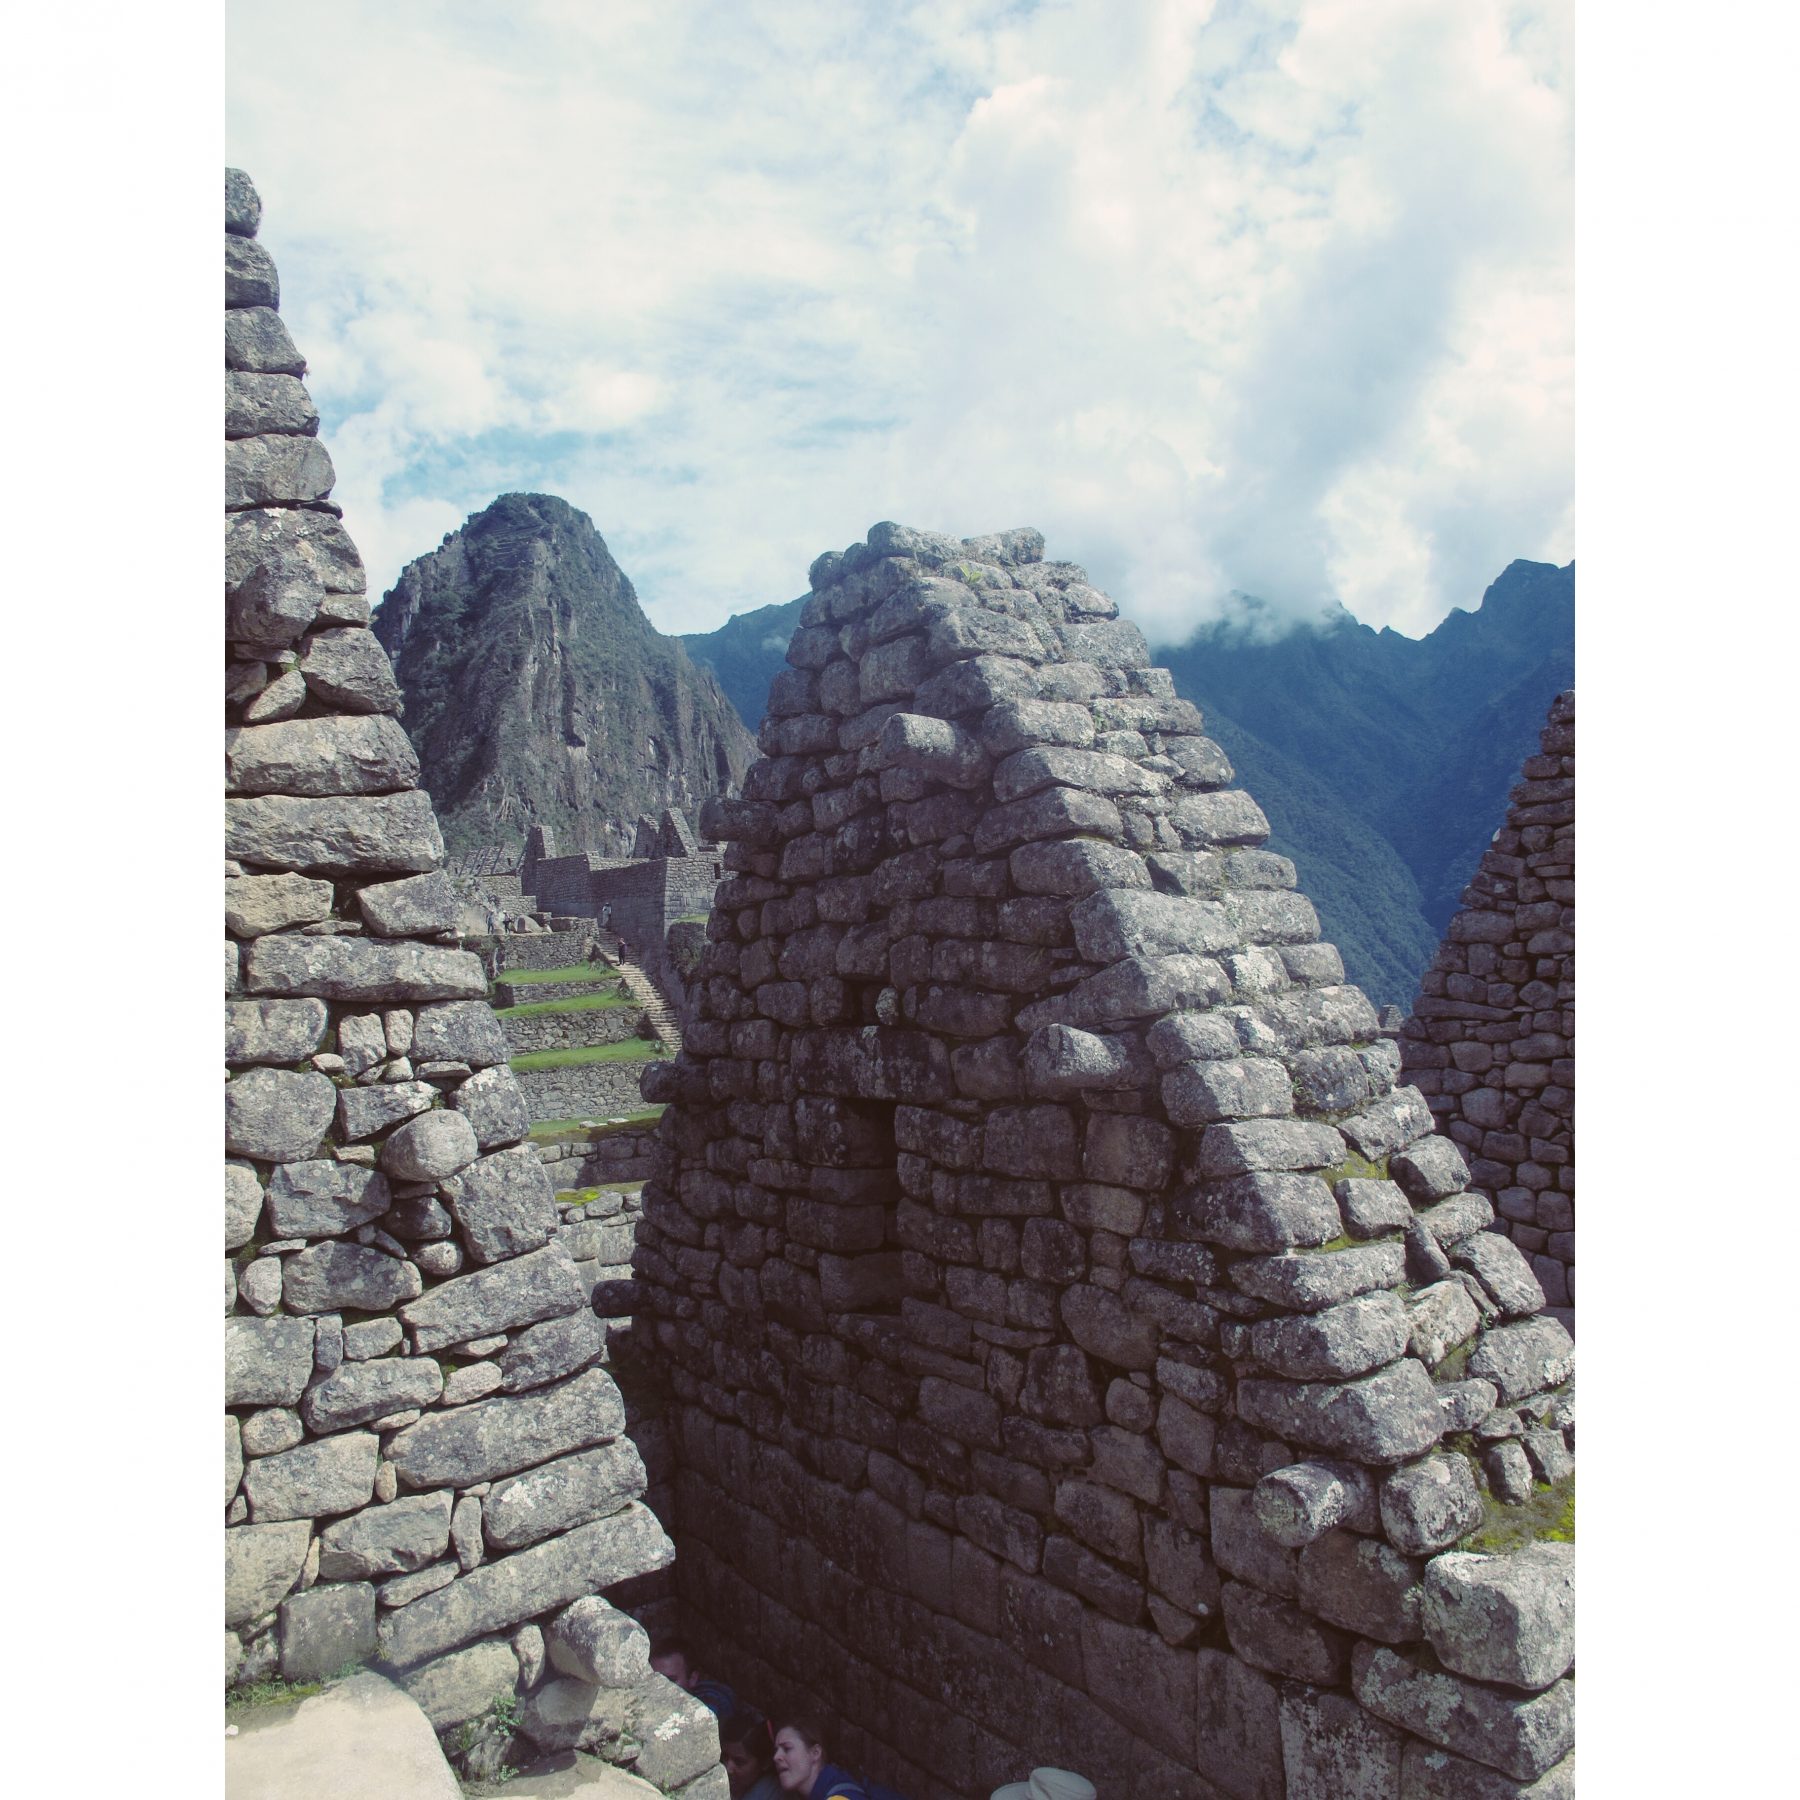 Les ruines de la cité du Machu Picchu